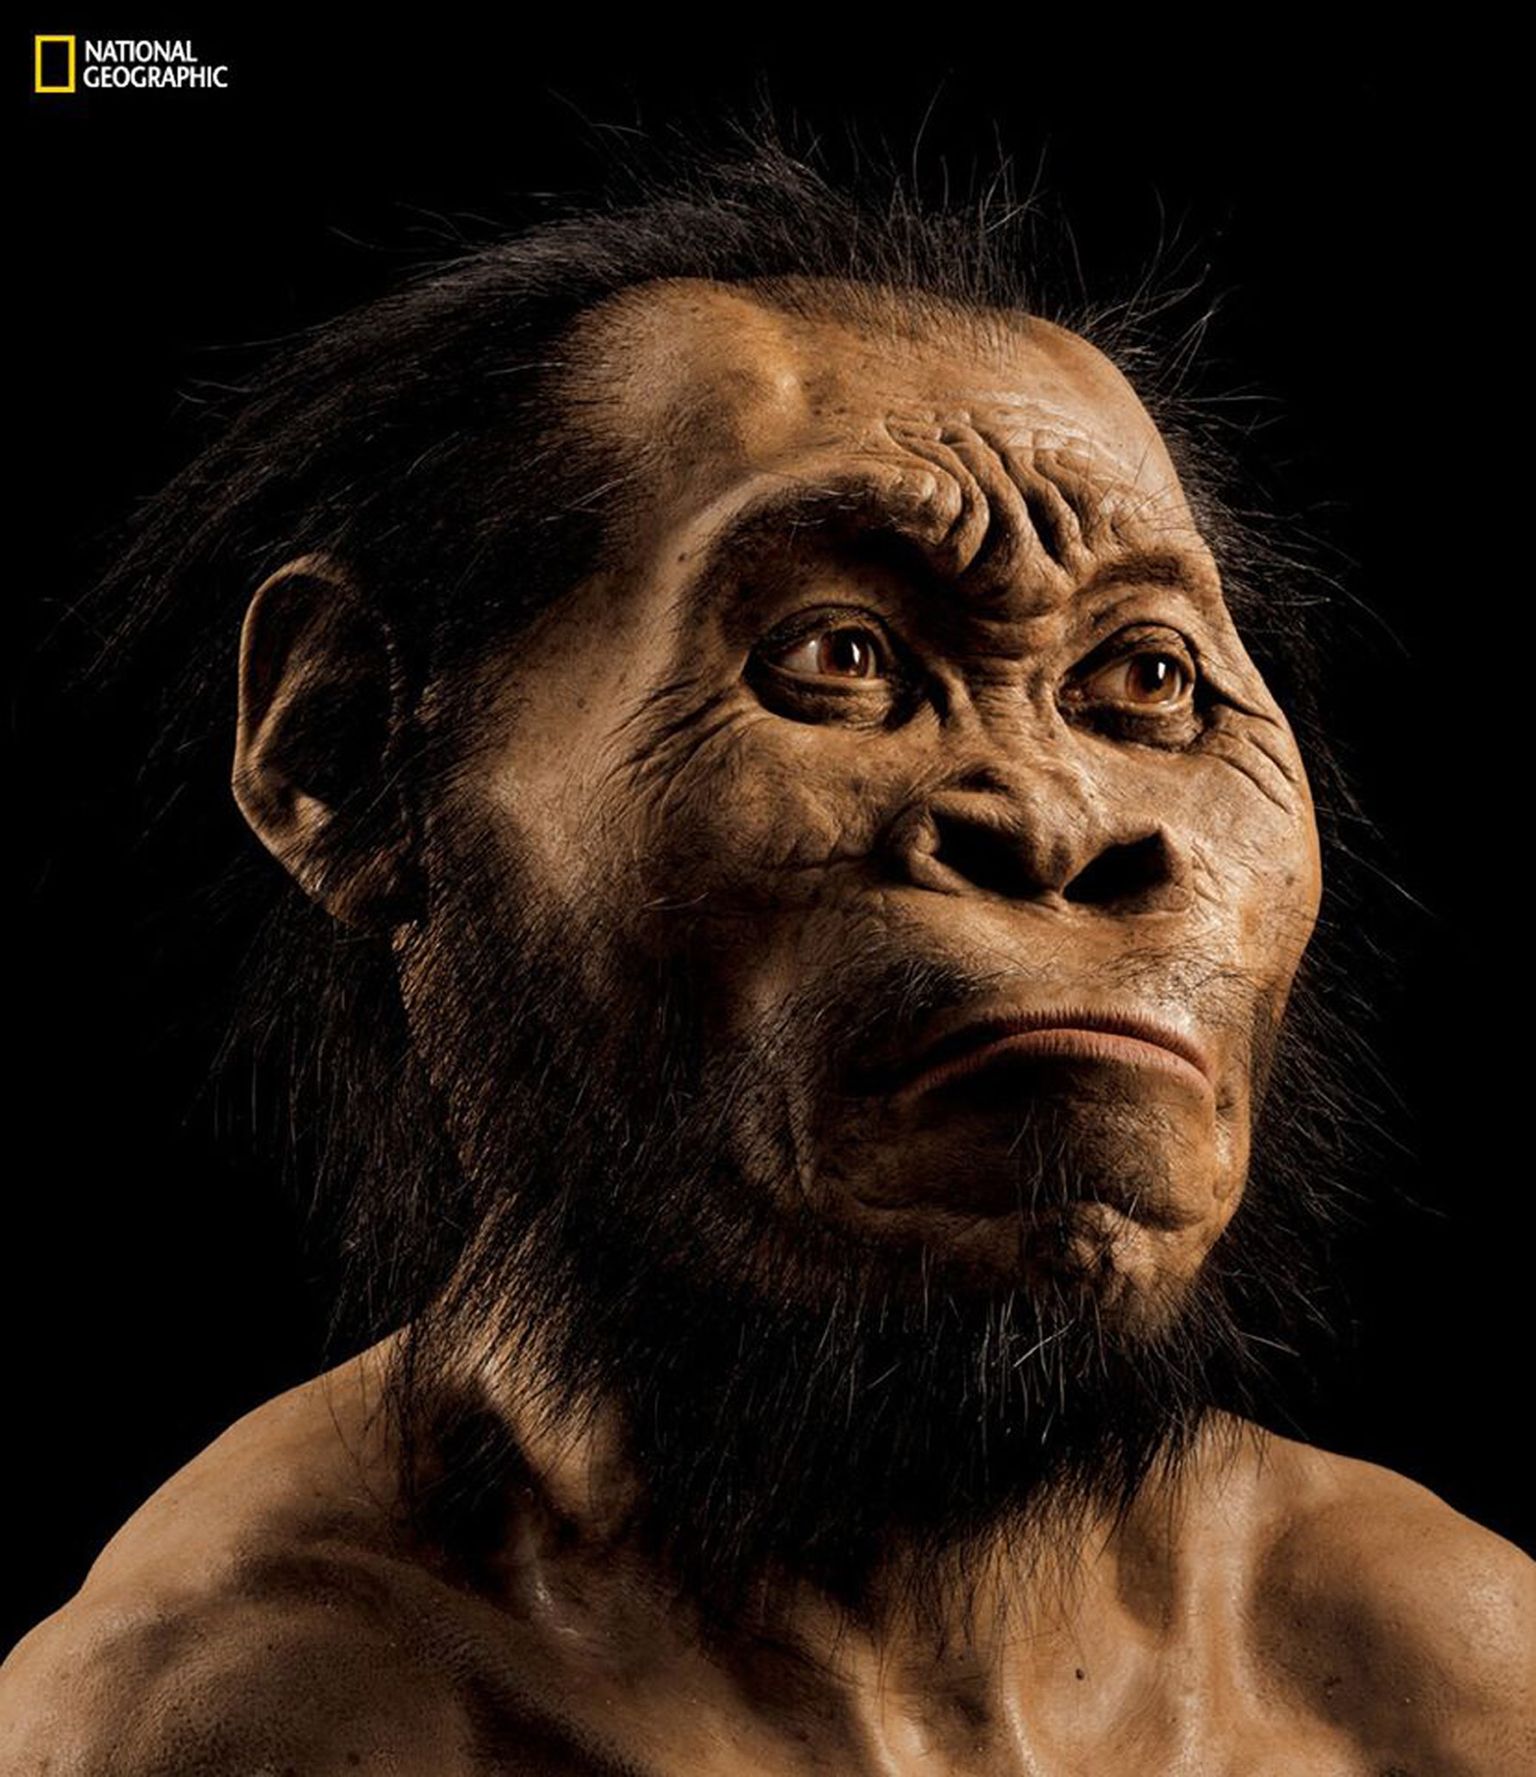 USA paleokunstniku John Gurche joonistus väljasurnud inimliigist Homo naledi'st